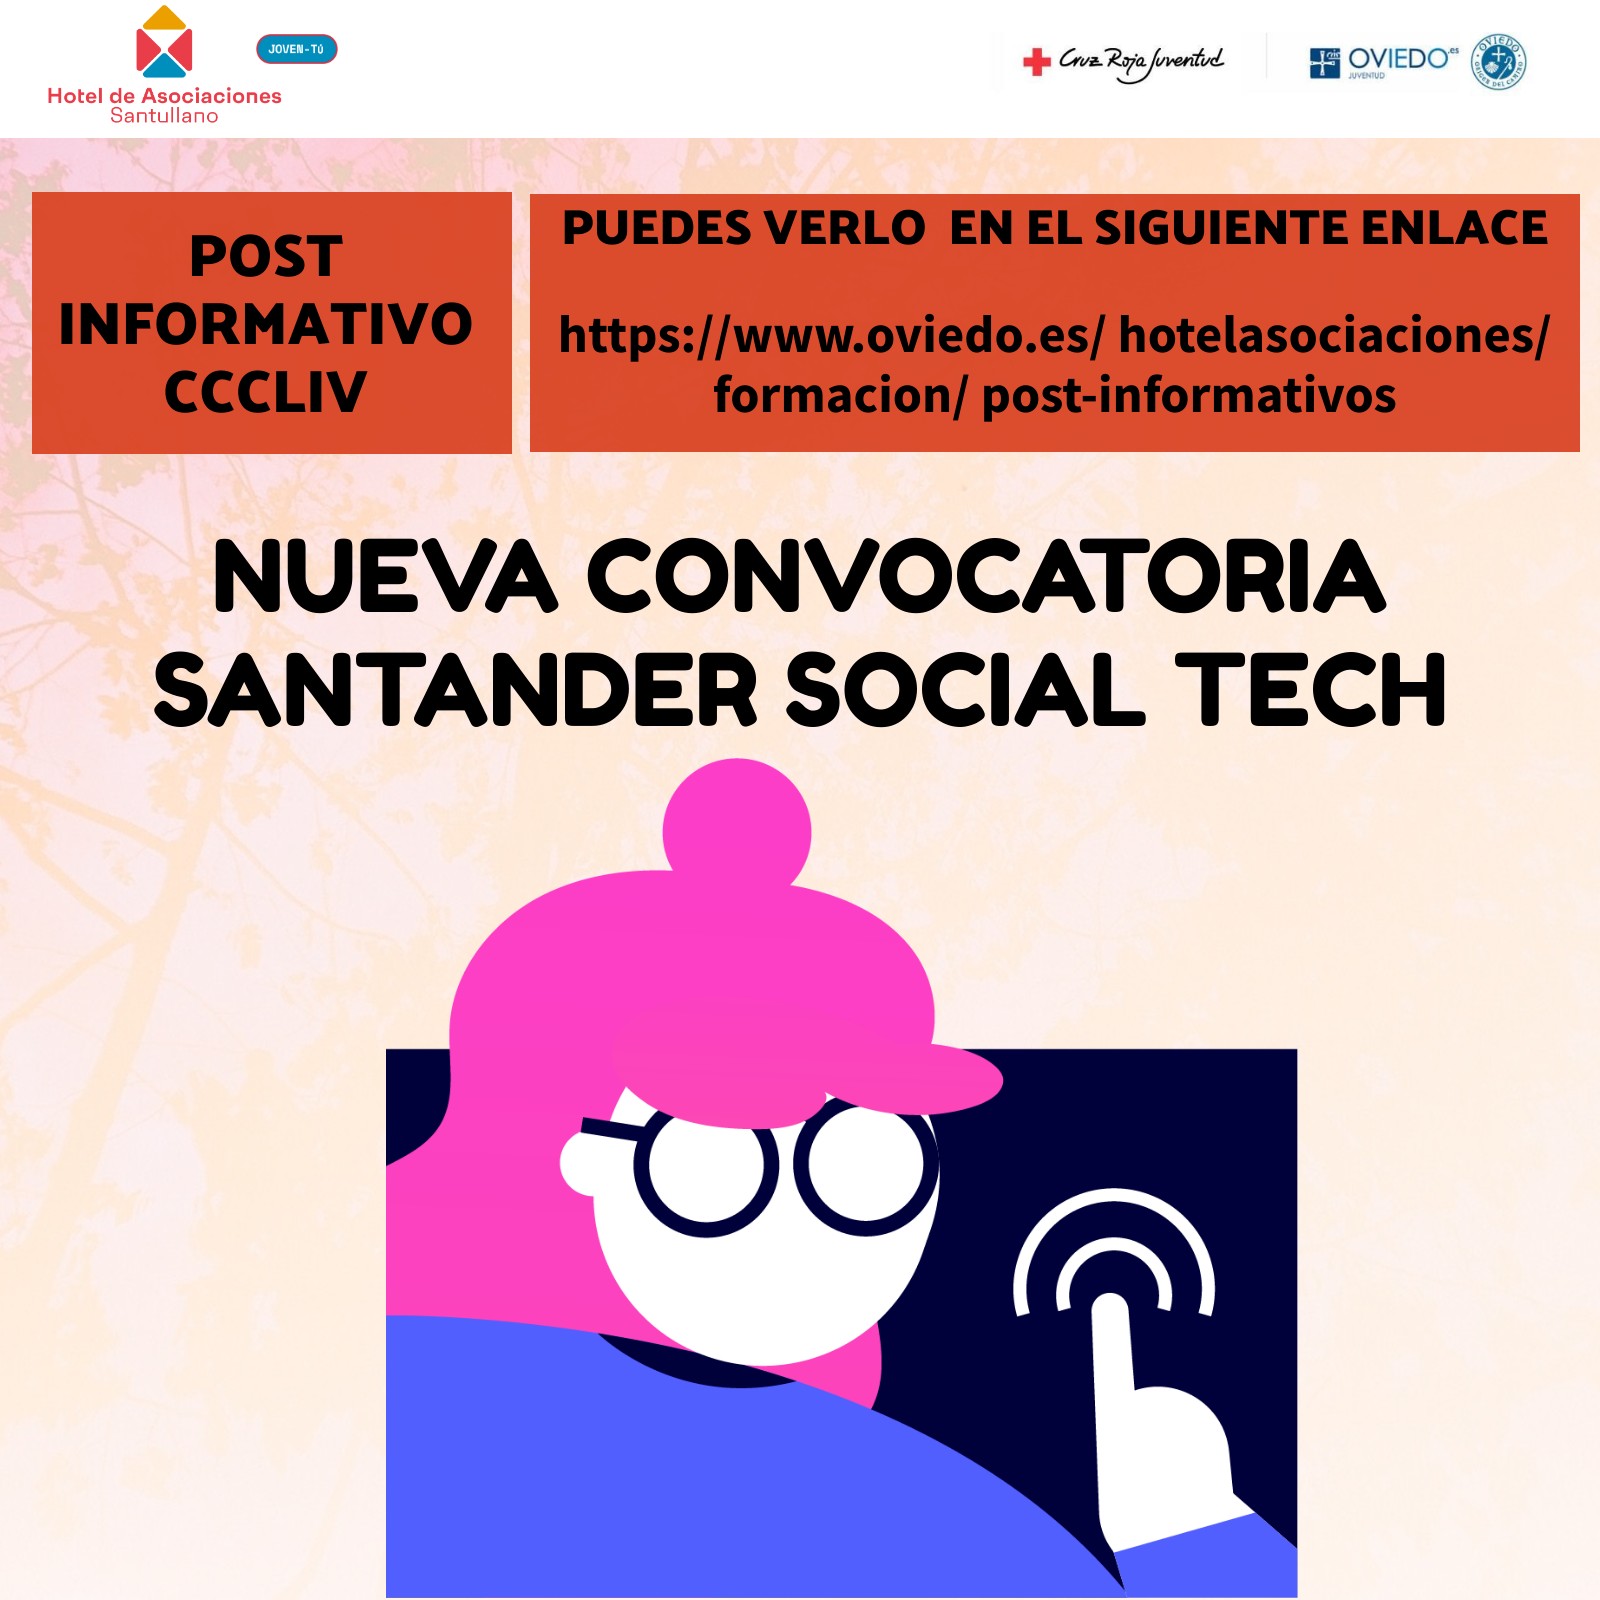 Nueva convocatoria Santander Social Tech